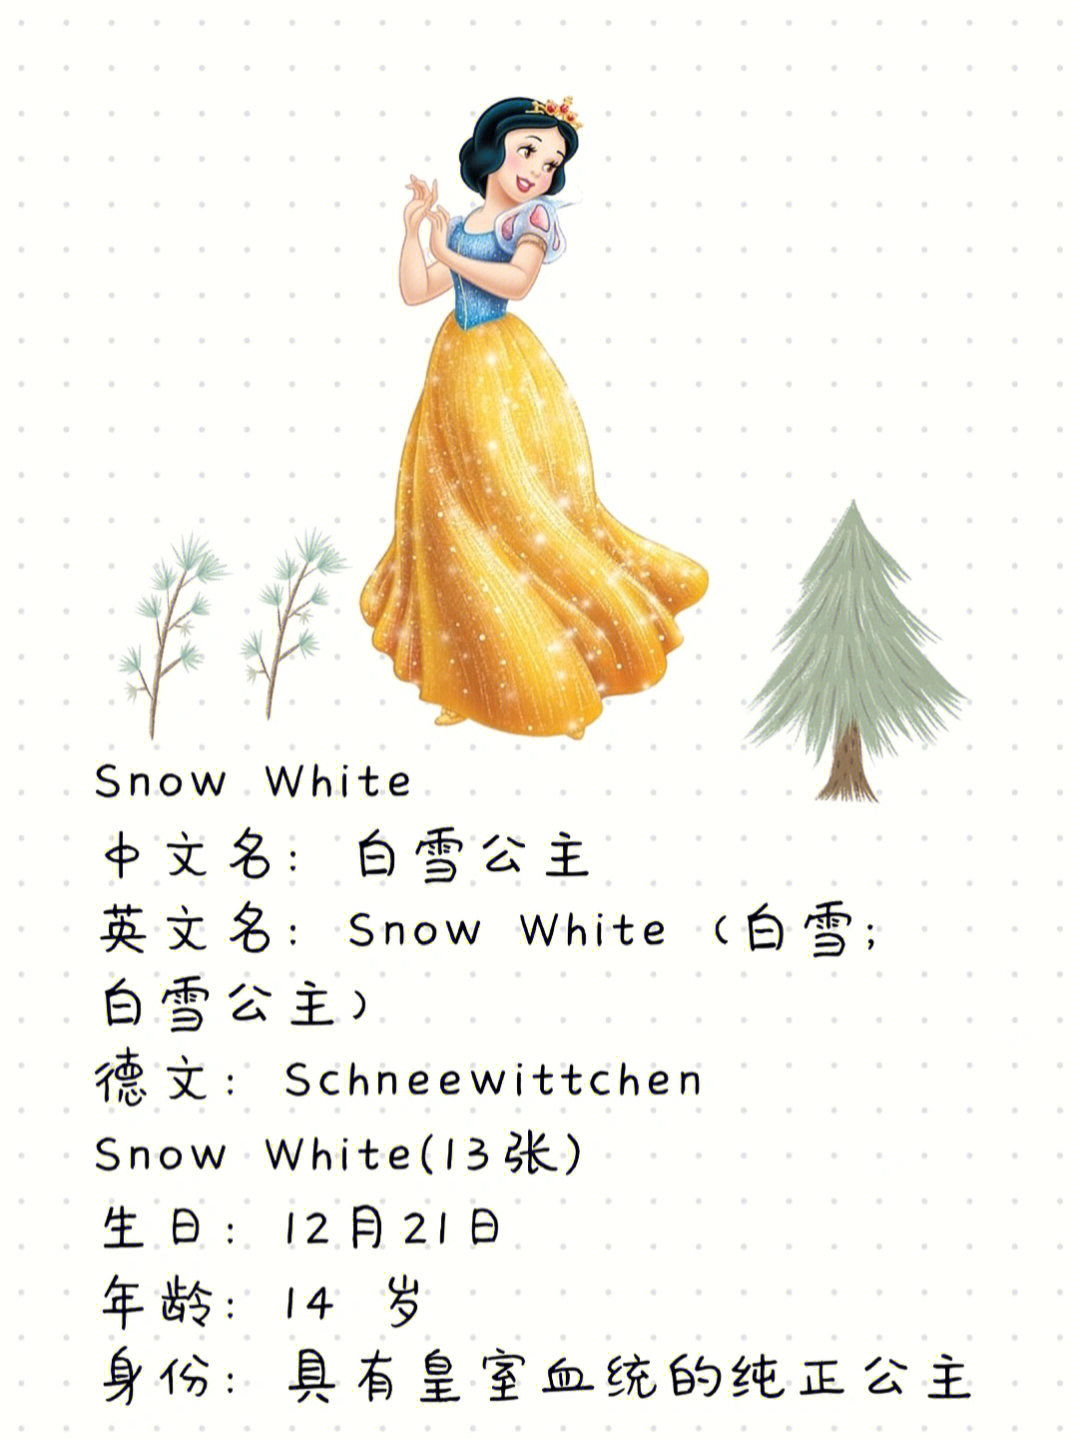 每天一位迪士尼公主166白雪公主snowwhite